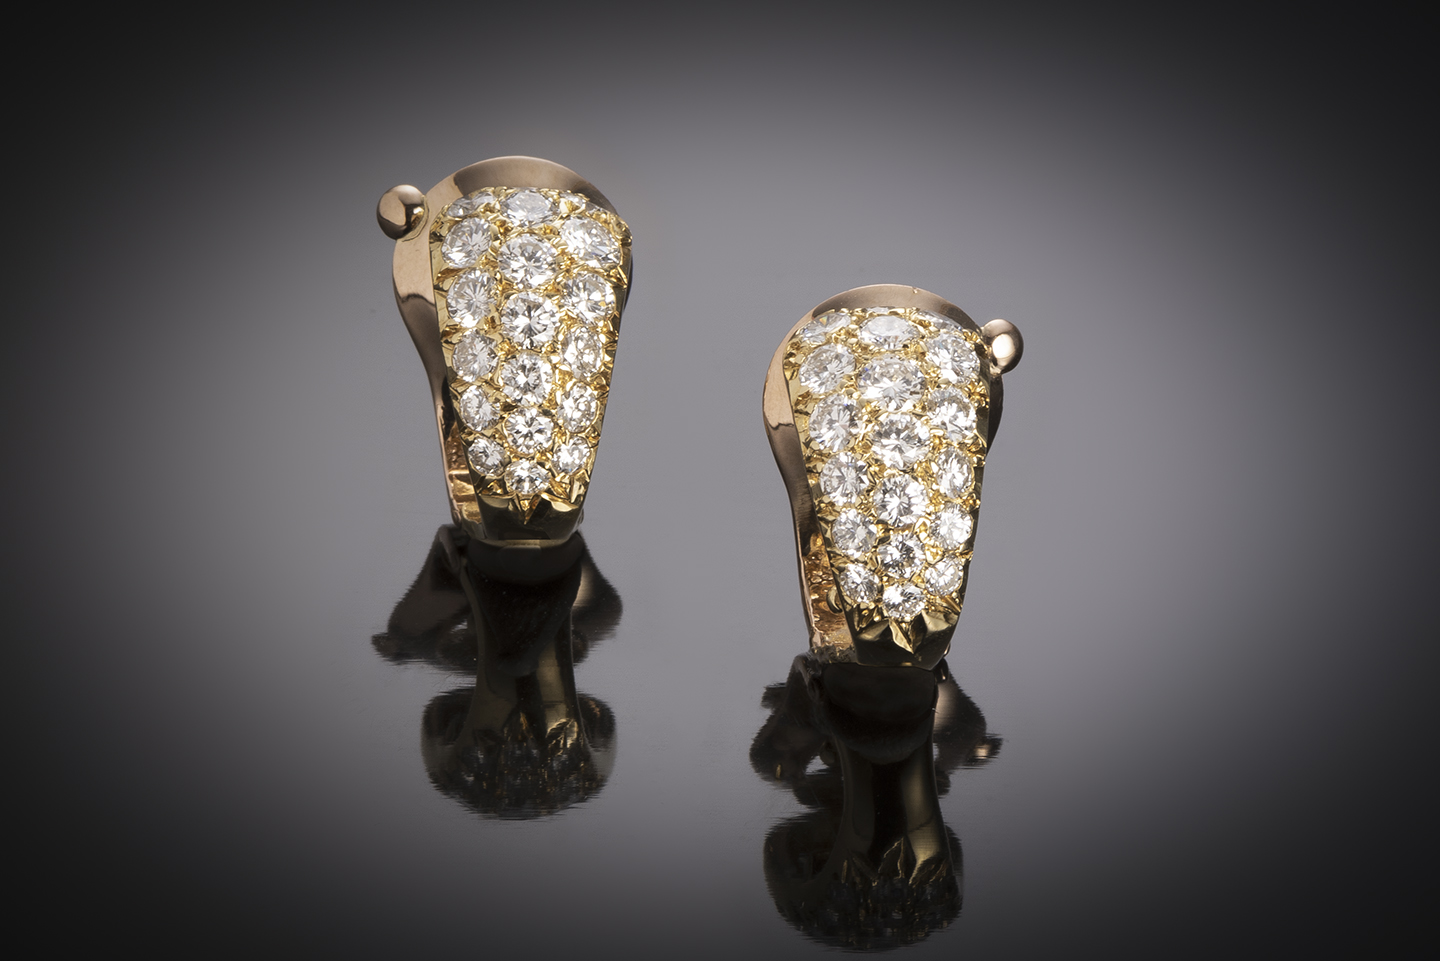 Boucles d’oreilles Van Cleef & Arpels (signées et numérotées)  diamants (2 carats) vers 1960, poinçon : A. Vassort-1